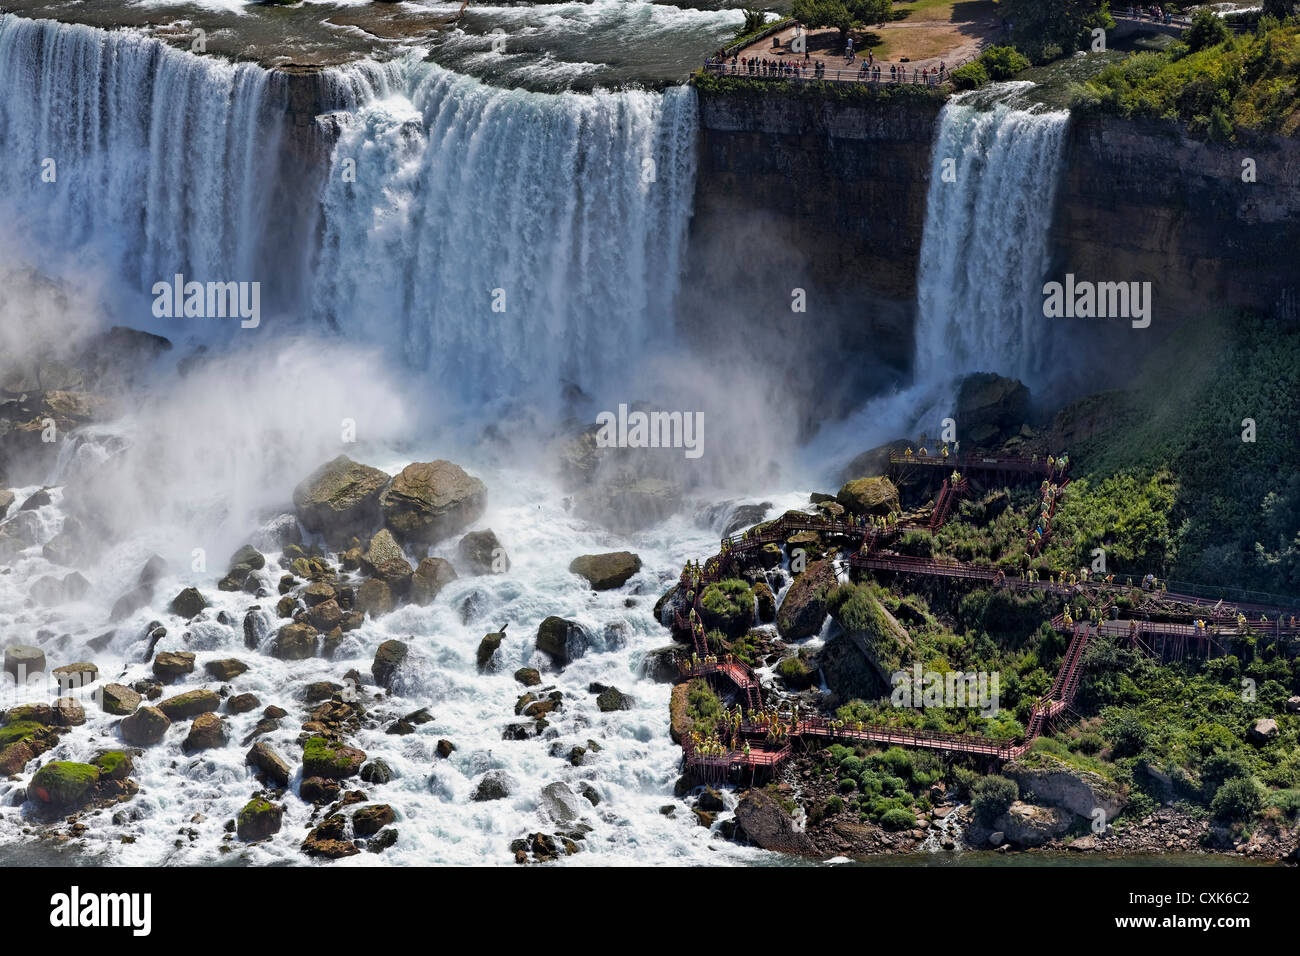 Visitors at The American Falls at Niagara Falls, New York Stock Photo